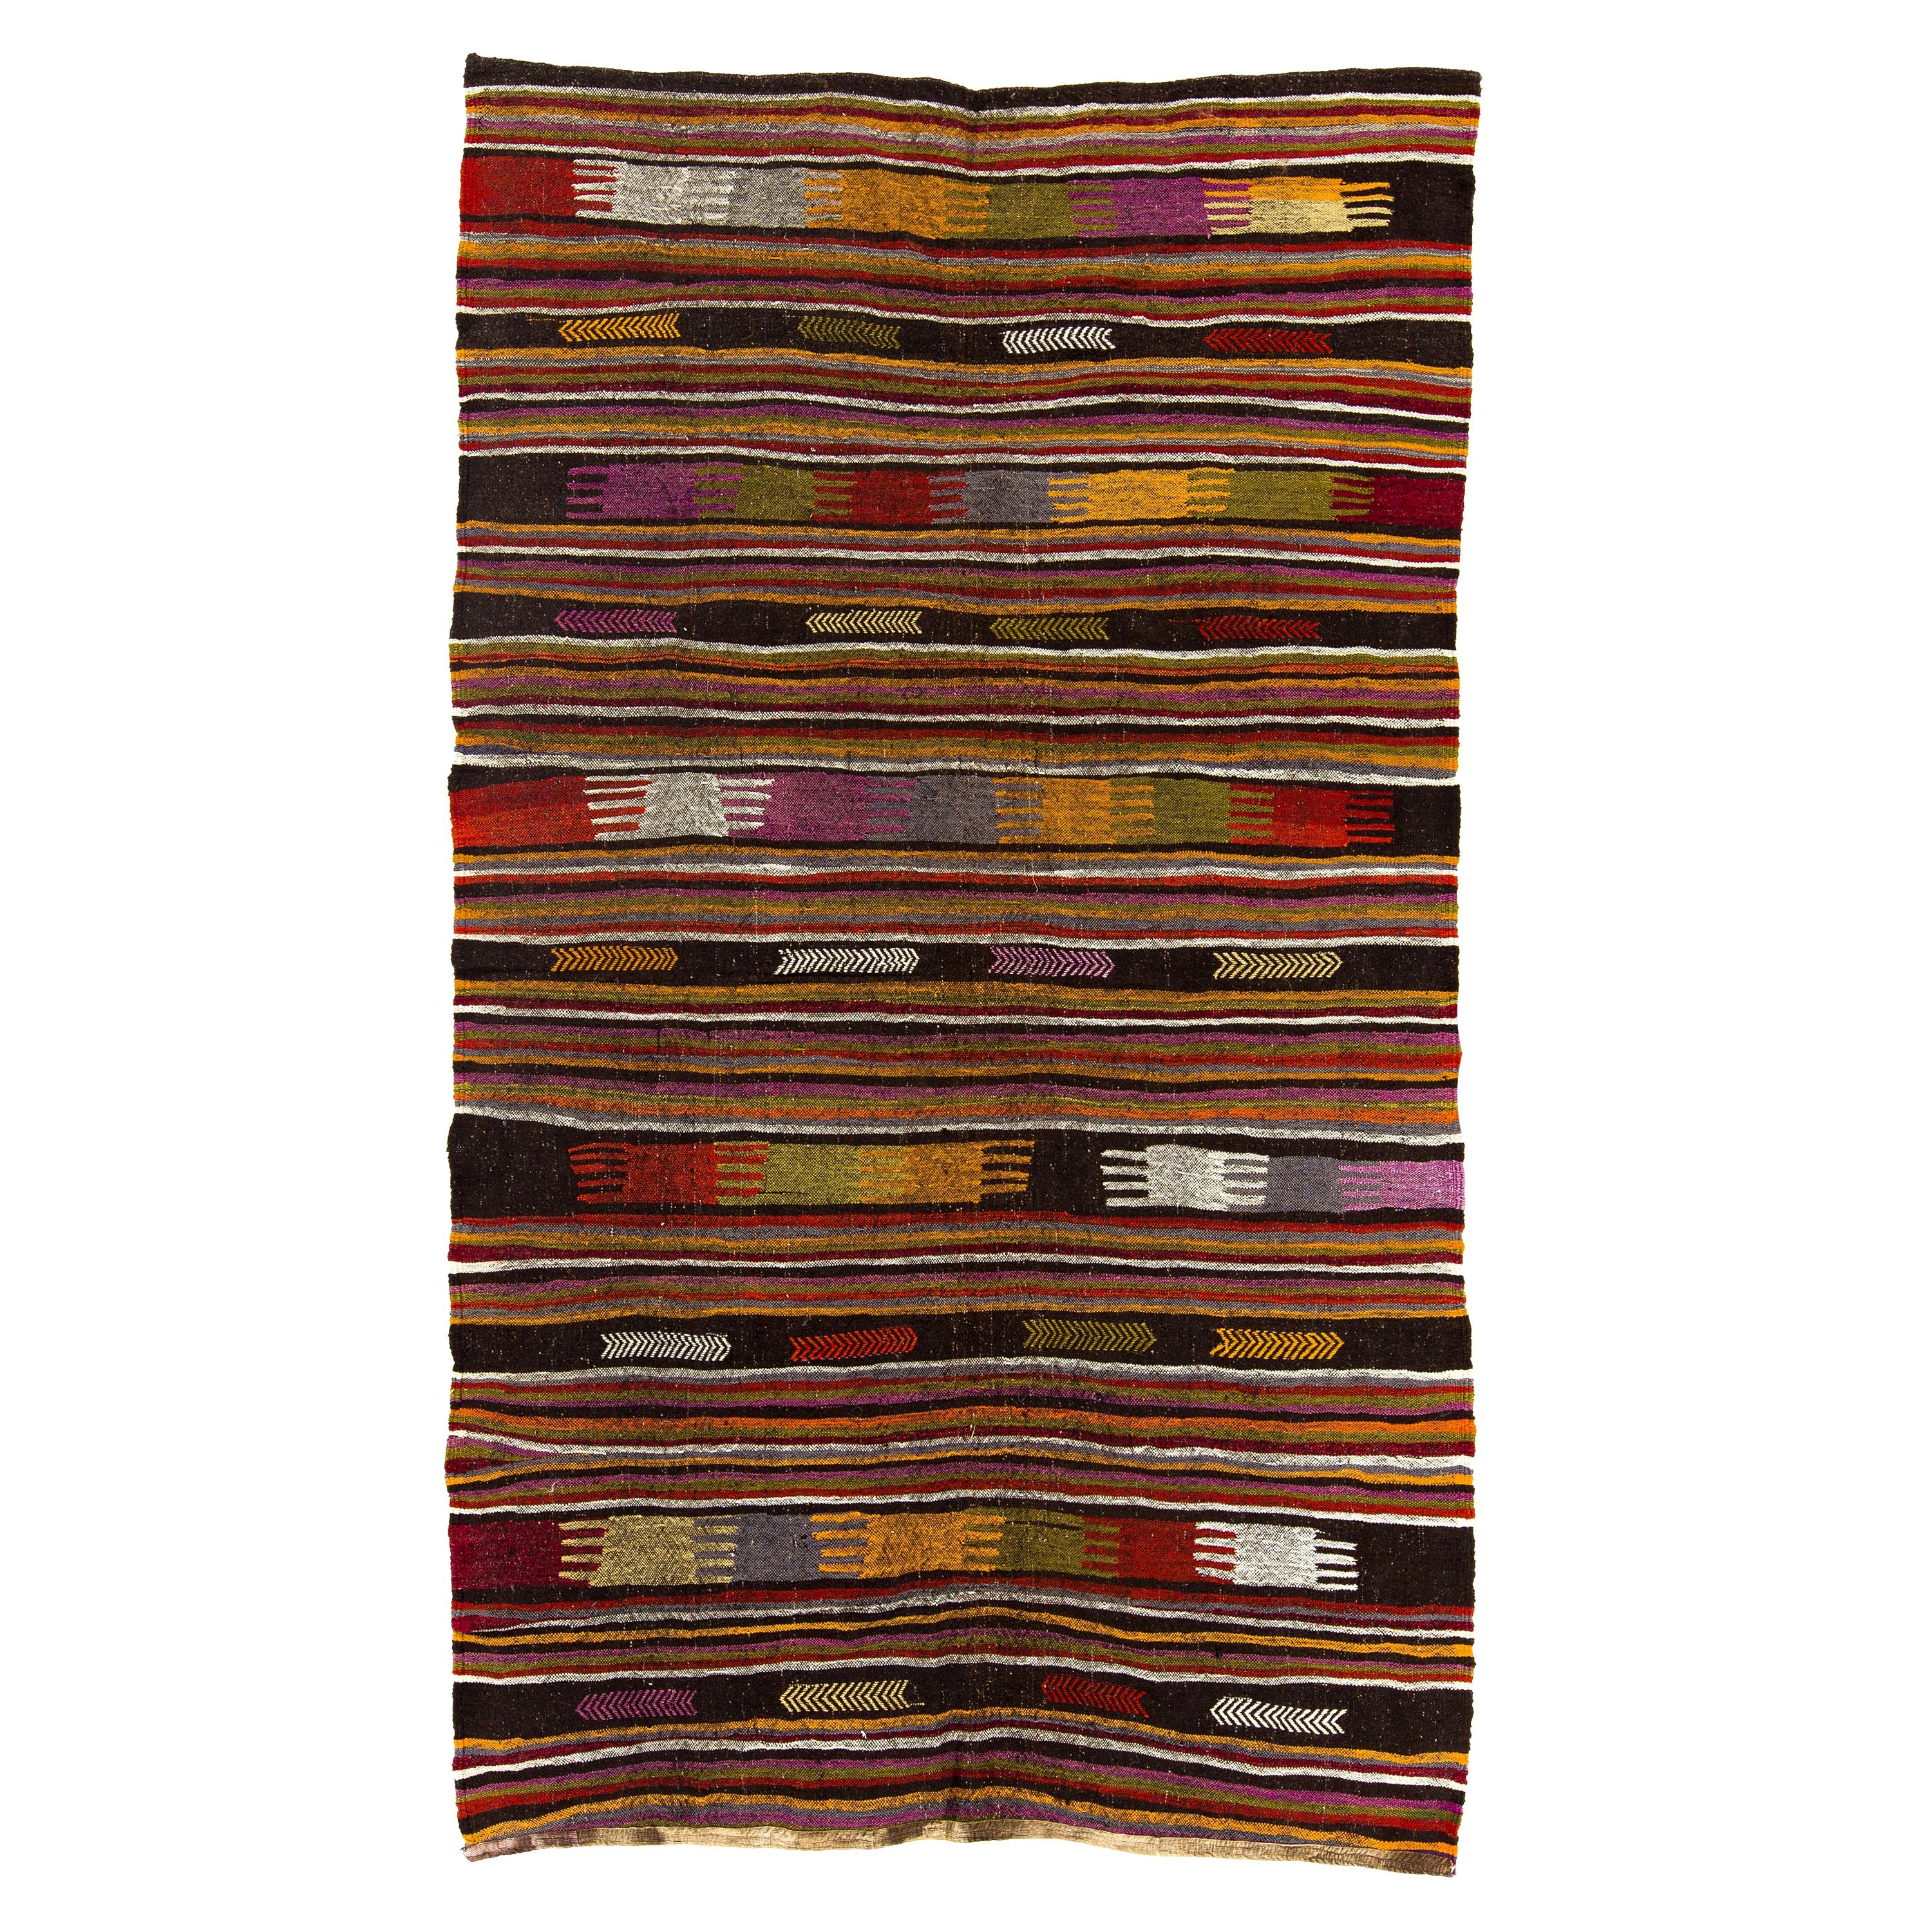 Tapis Kilim anatolien vintage coloré en laine tissé à plat de 5,5 x 9,2 m, revêtement de sol